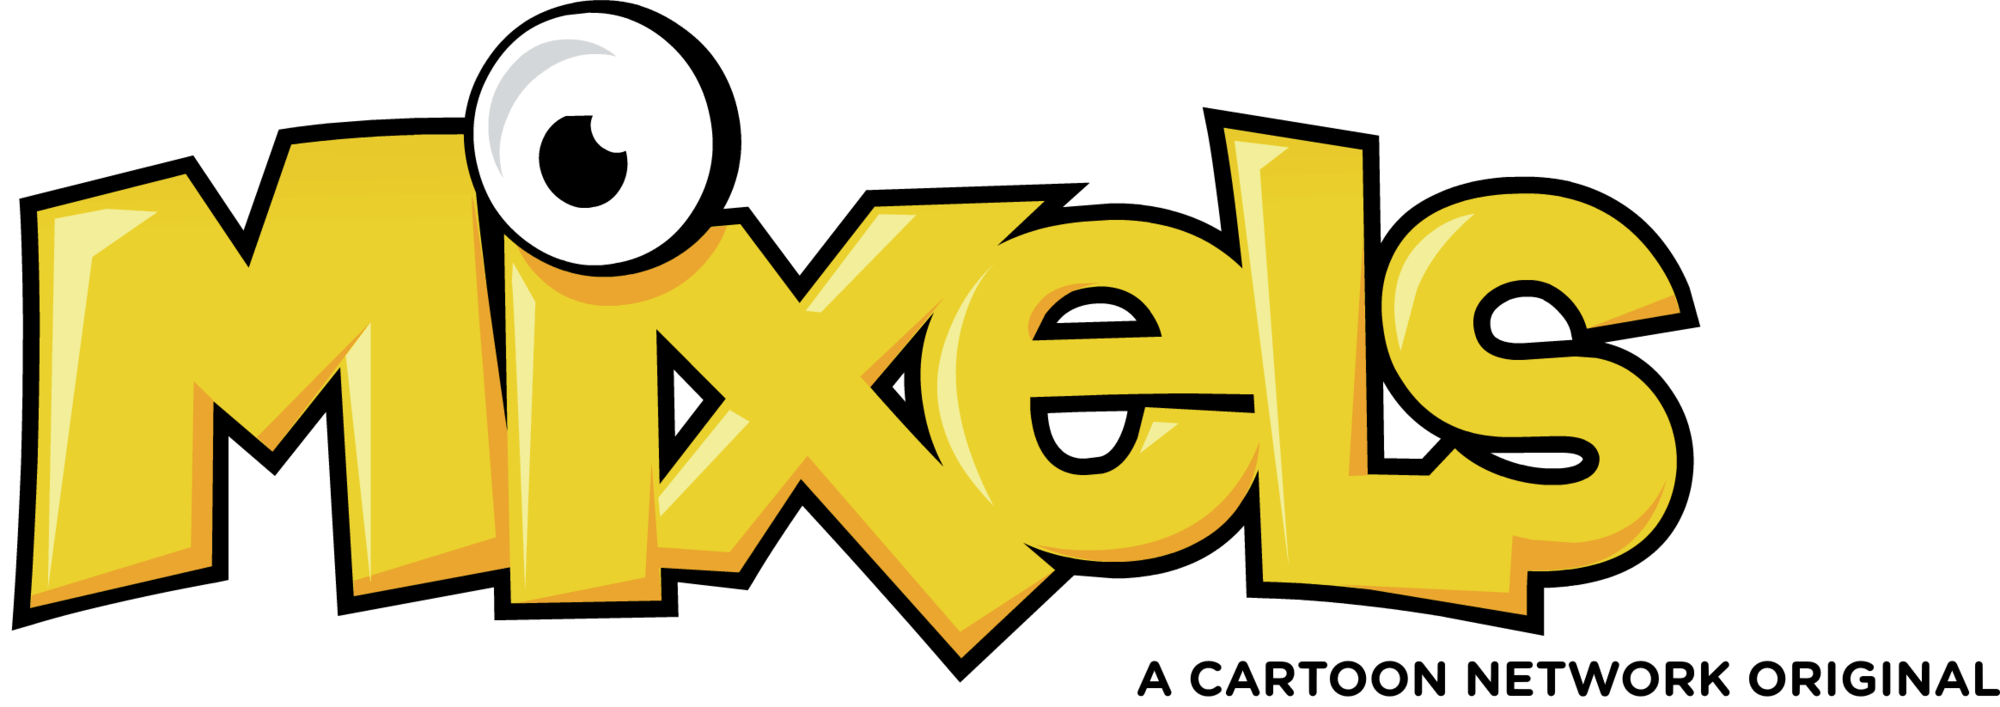 Mixels Logo - Mixels (TV series)